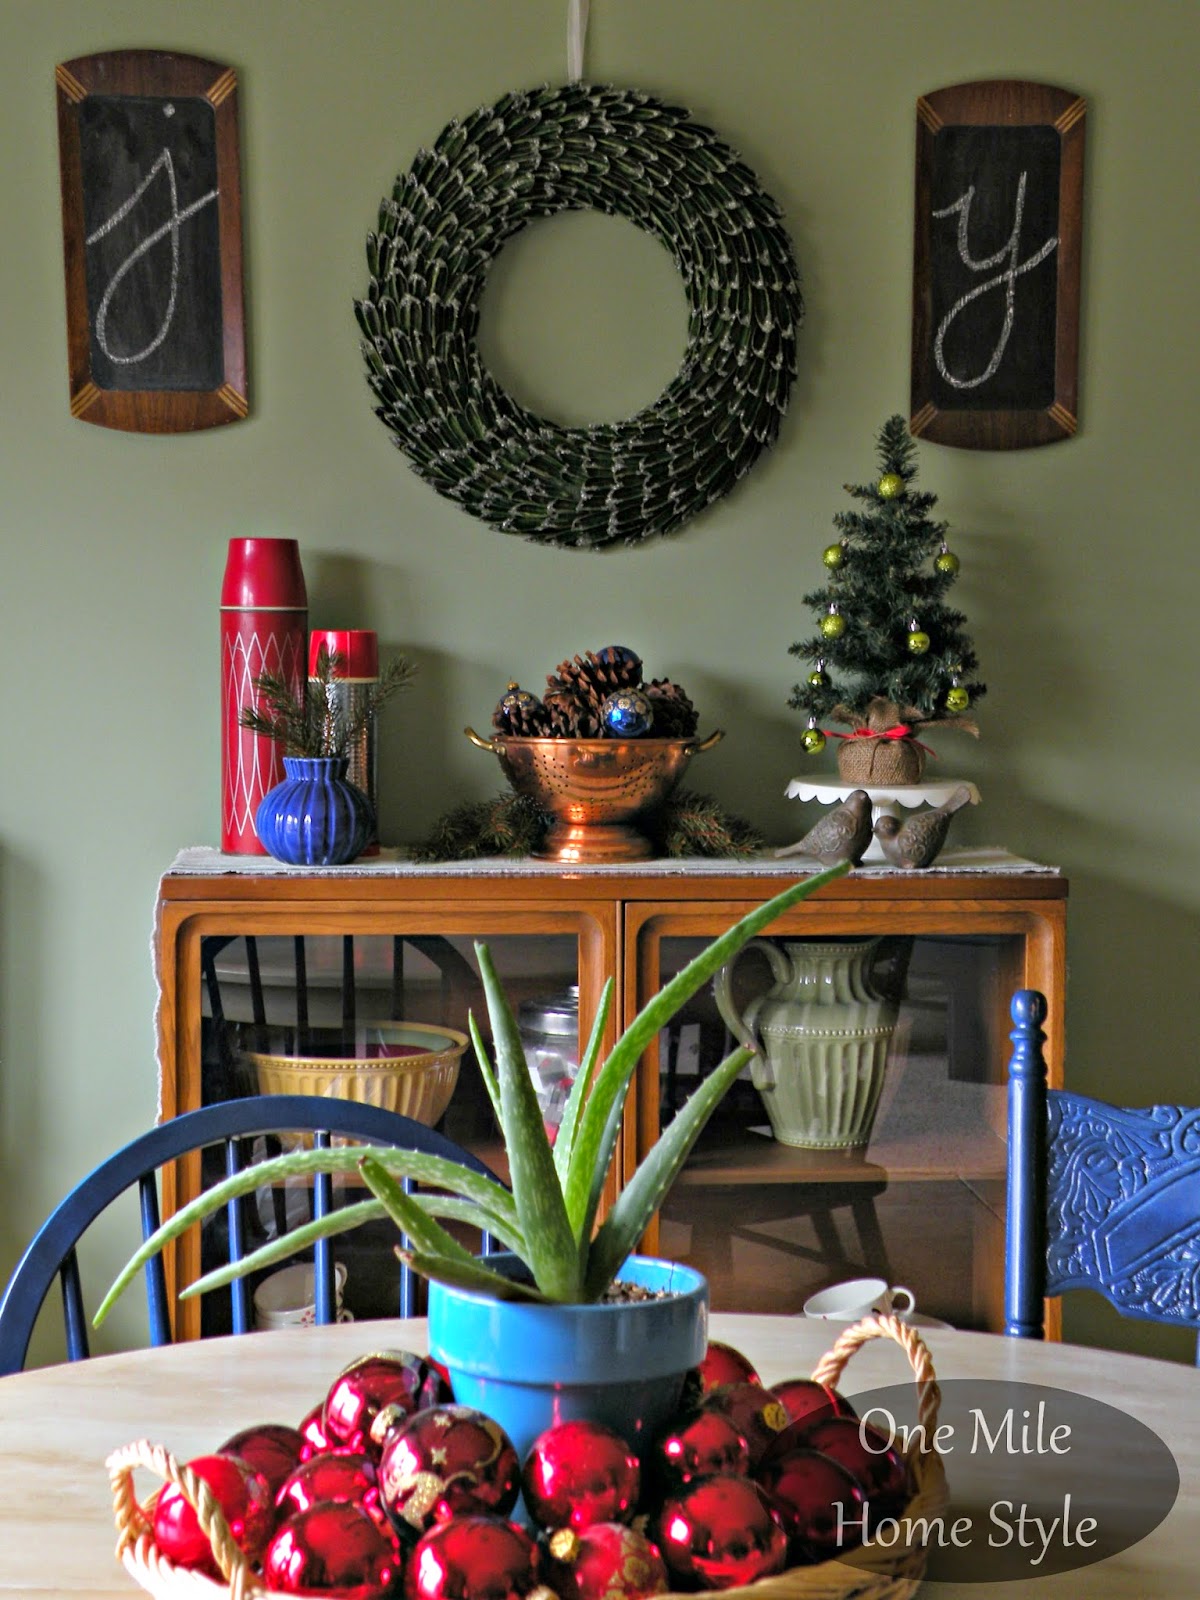 Joy chalkboard and wreath Christmas display